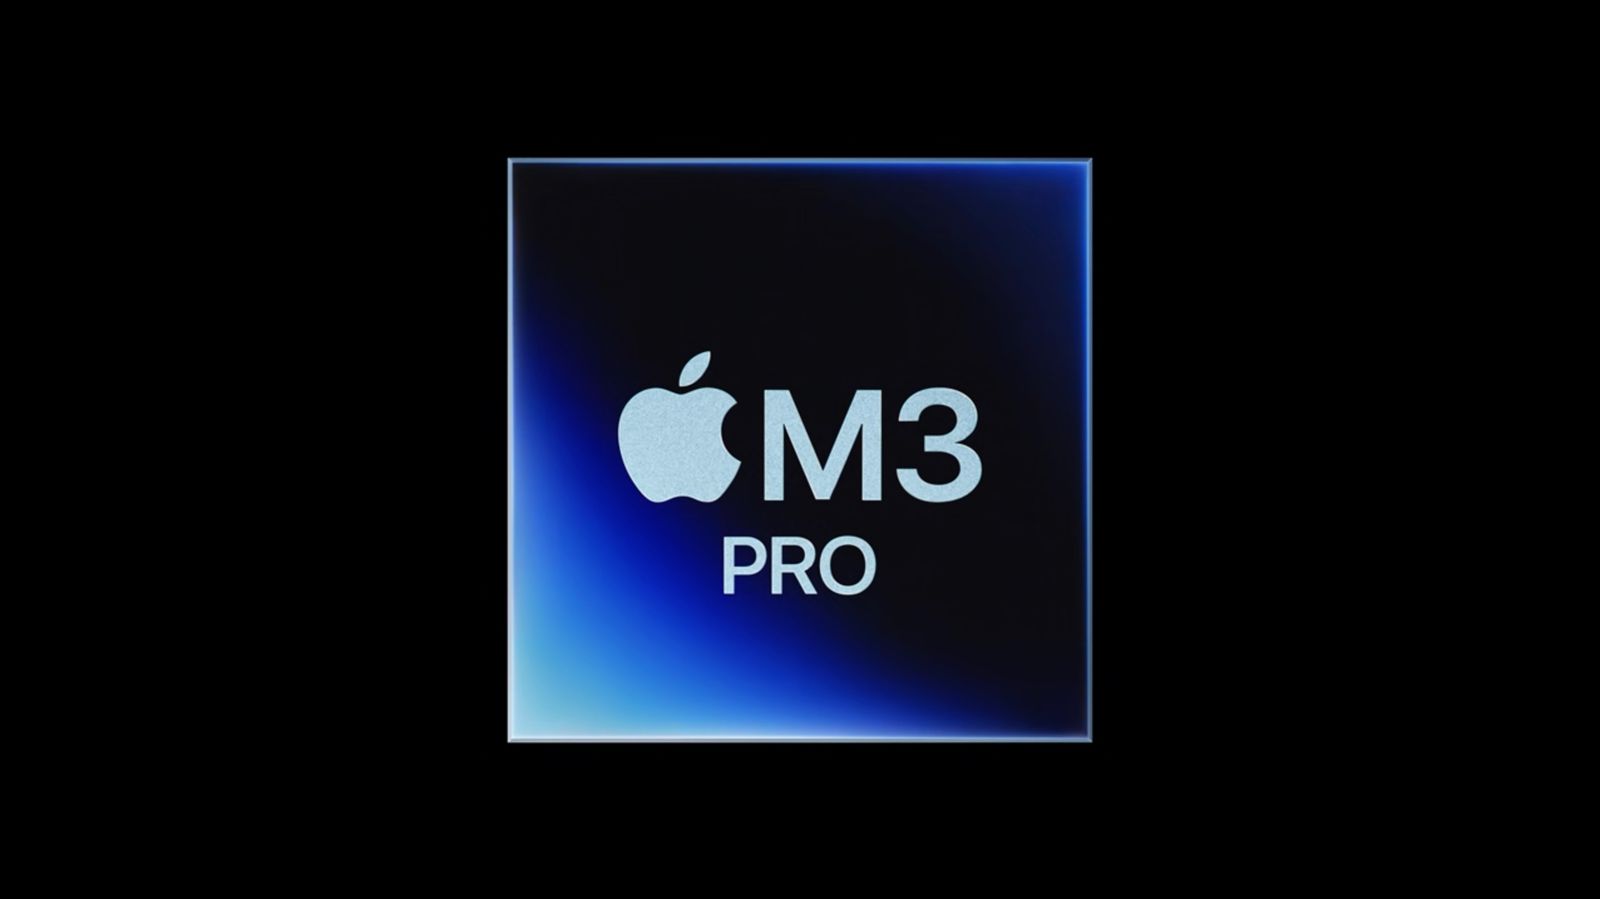 Apple har minskat minnesbandbredden i den nya M3 Pro-processorn med en fjärdedel jämfört med M1 Pro- och M2 Pro-processorerna